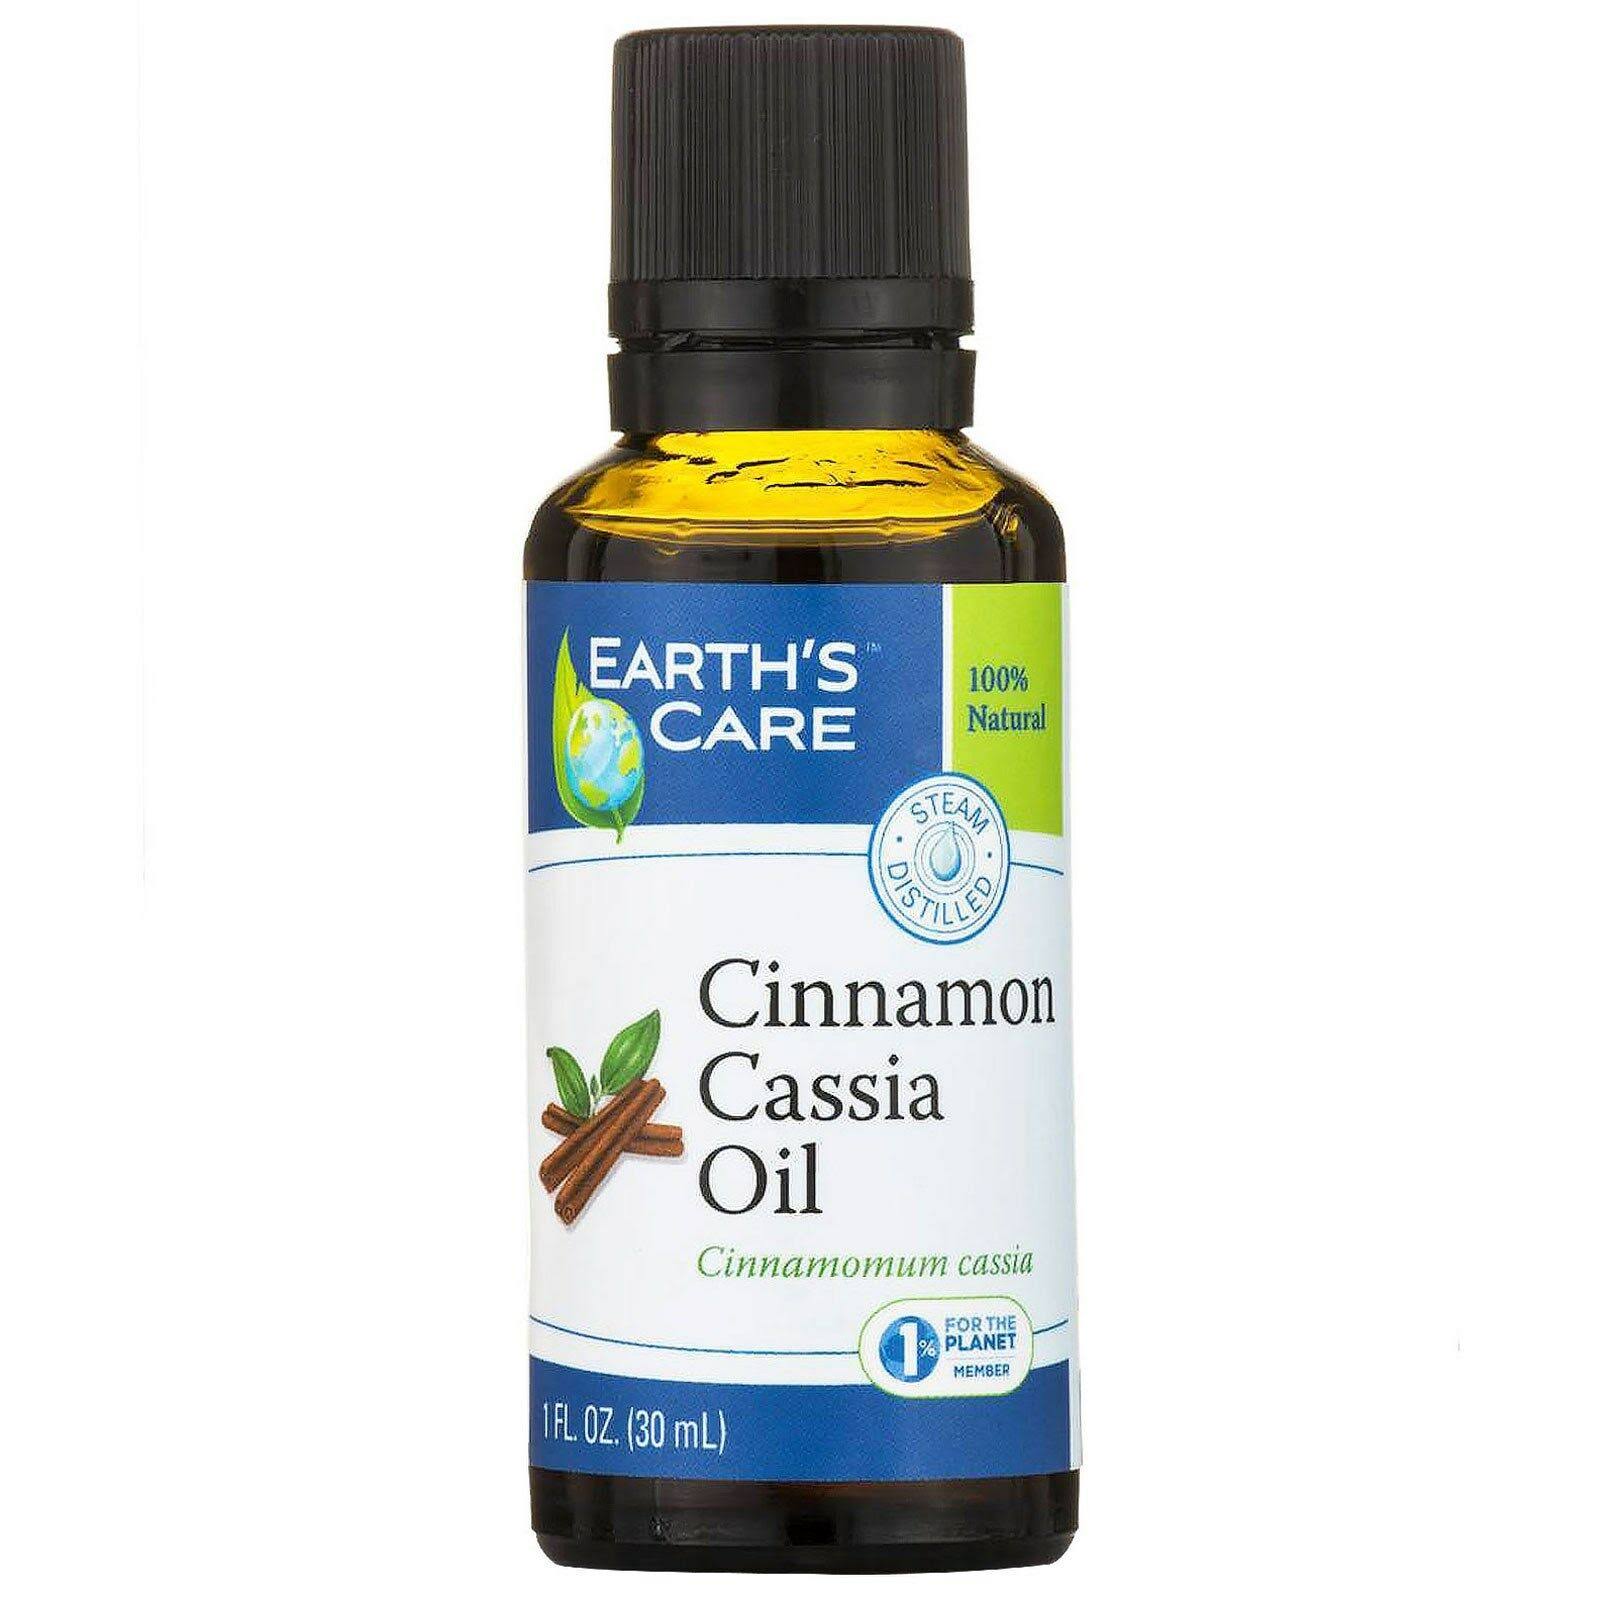 Earth's Care Cinnamon Cassia Oil - 1oz